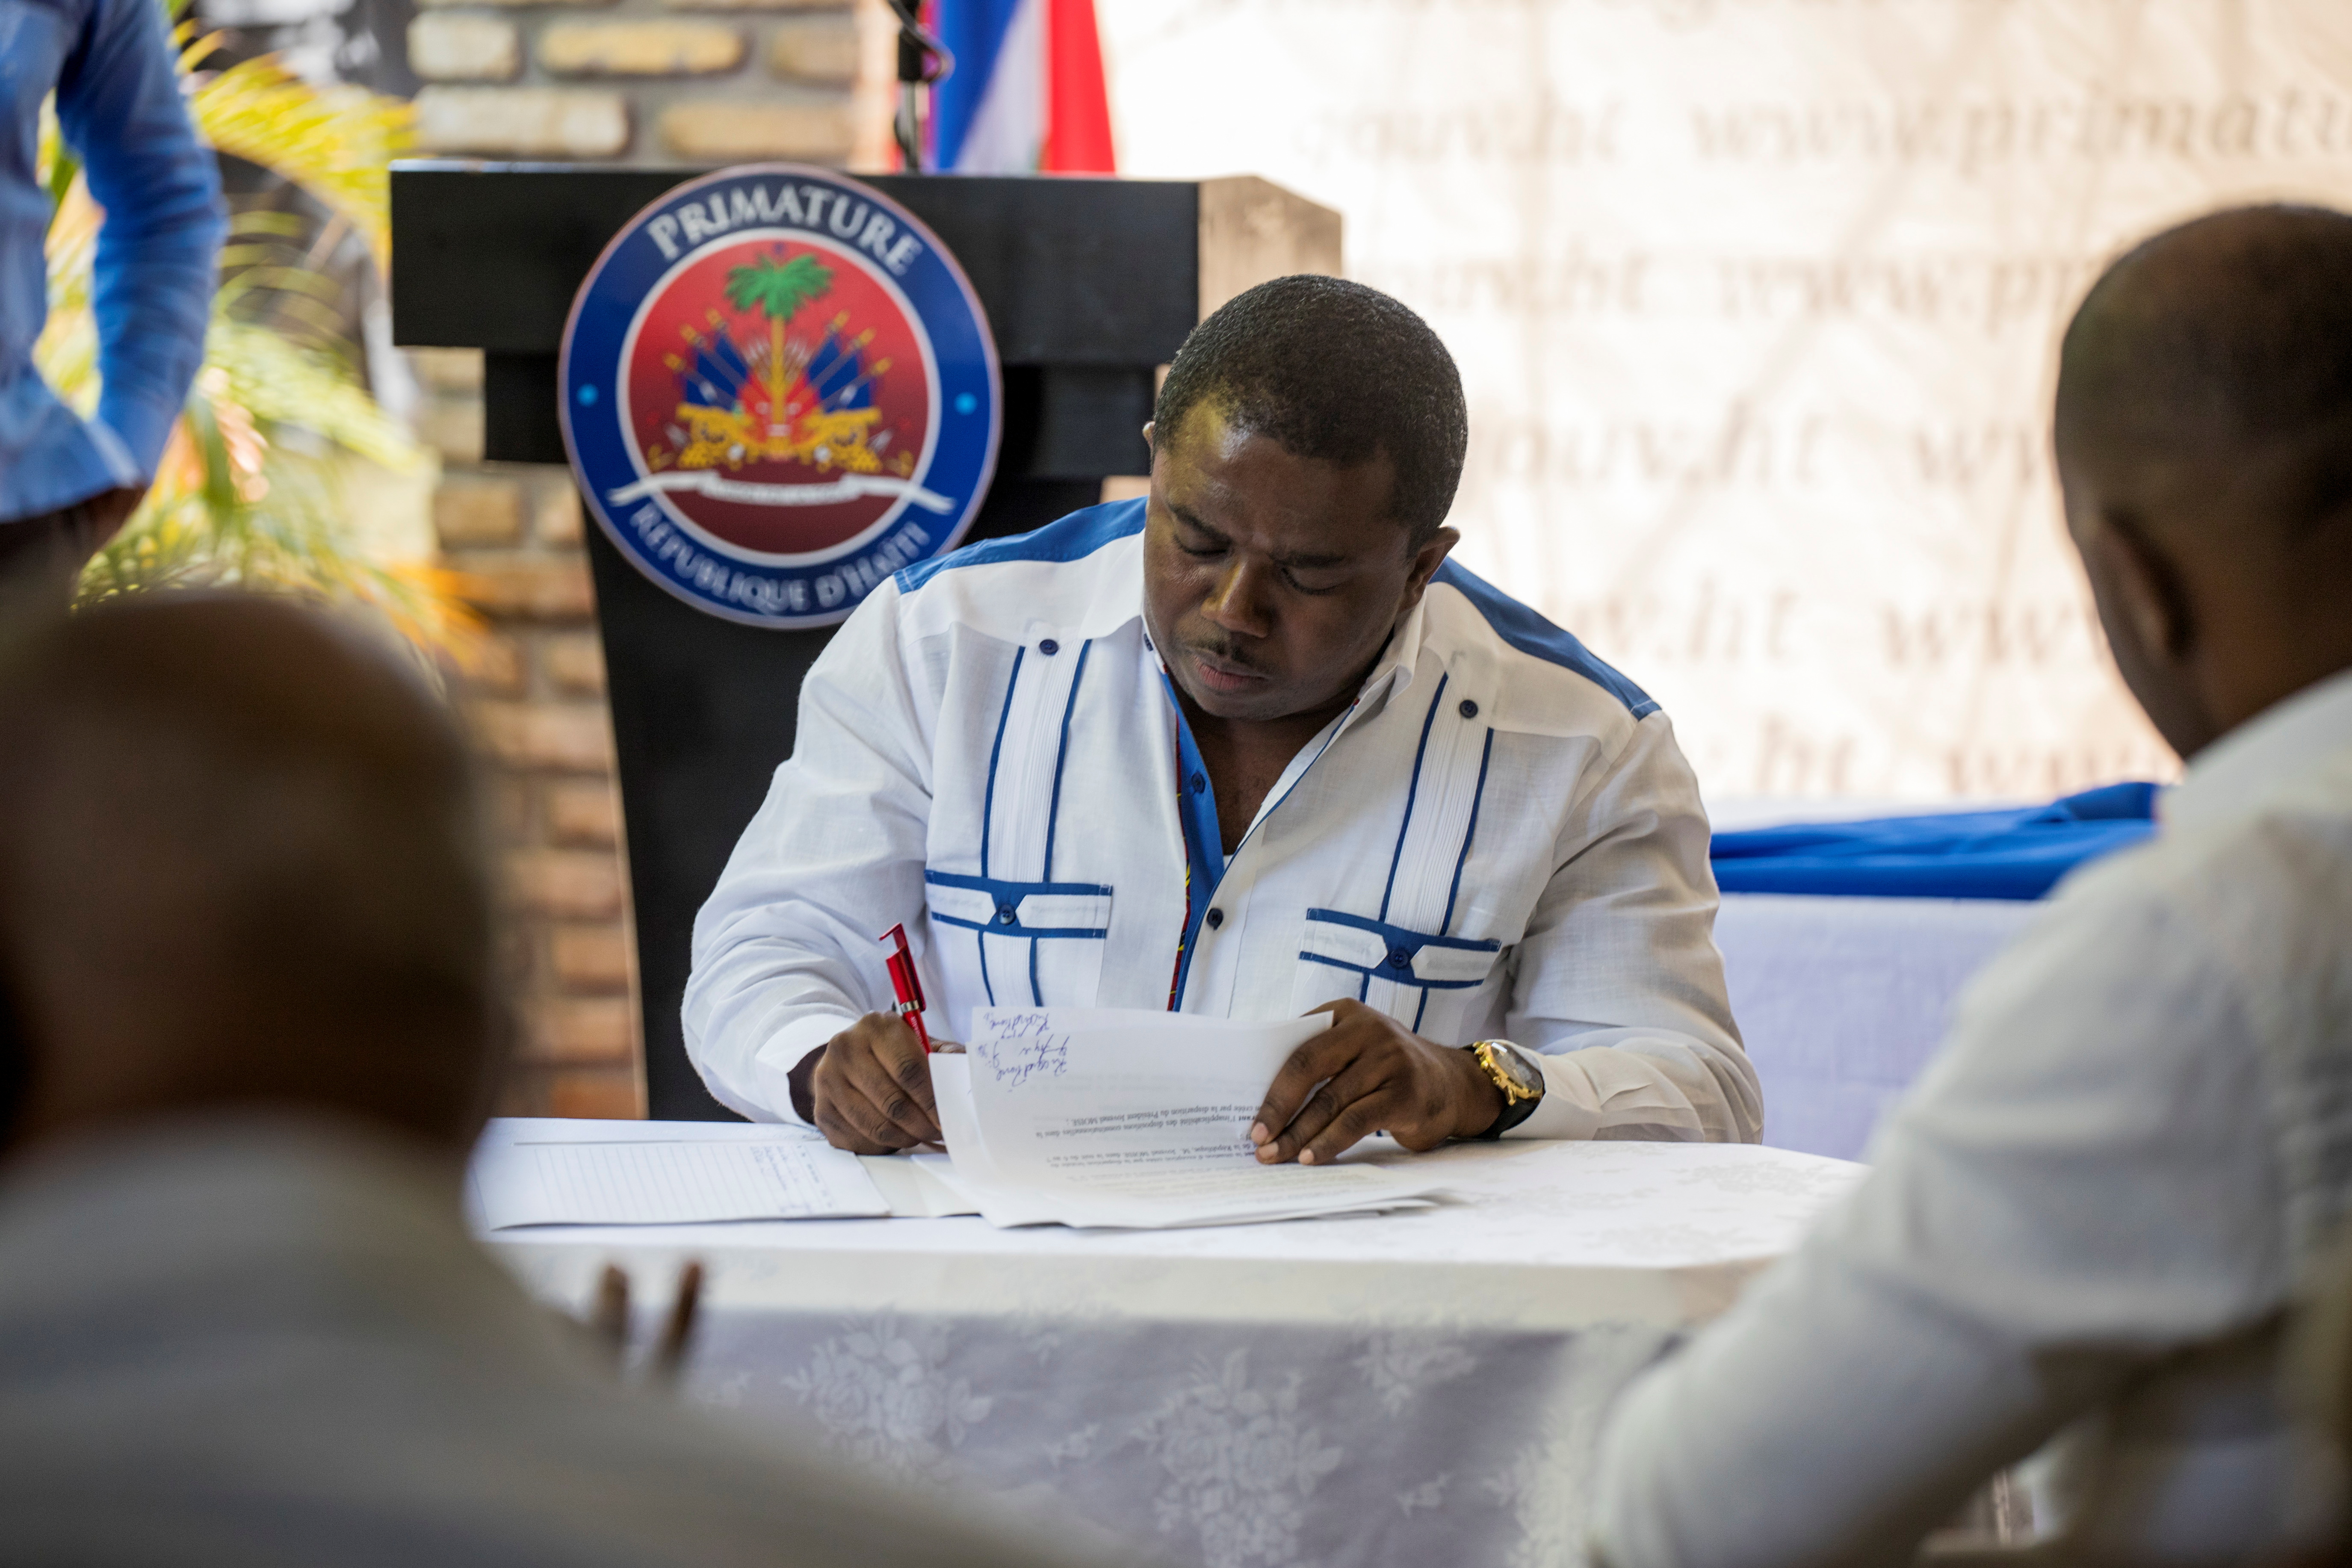 El portavoz del Sector Popular y Democrático de Haití, Andre Michel, también firmó el acuerdo (FOTO: REUTERS)